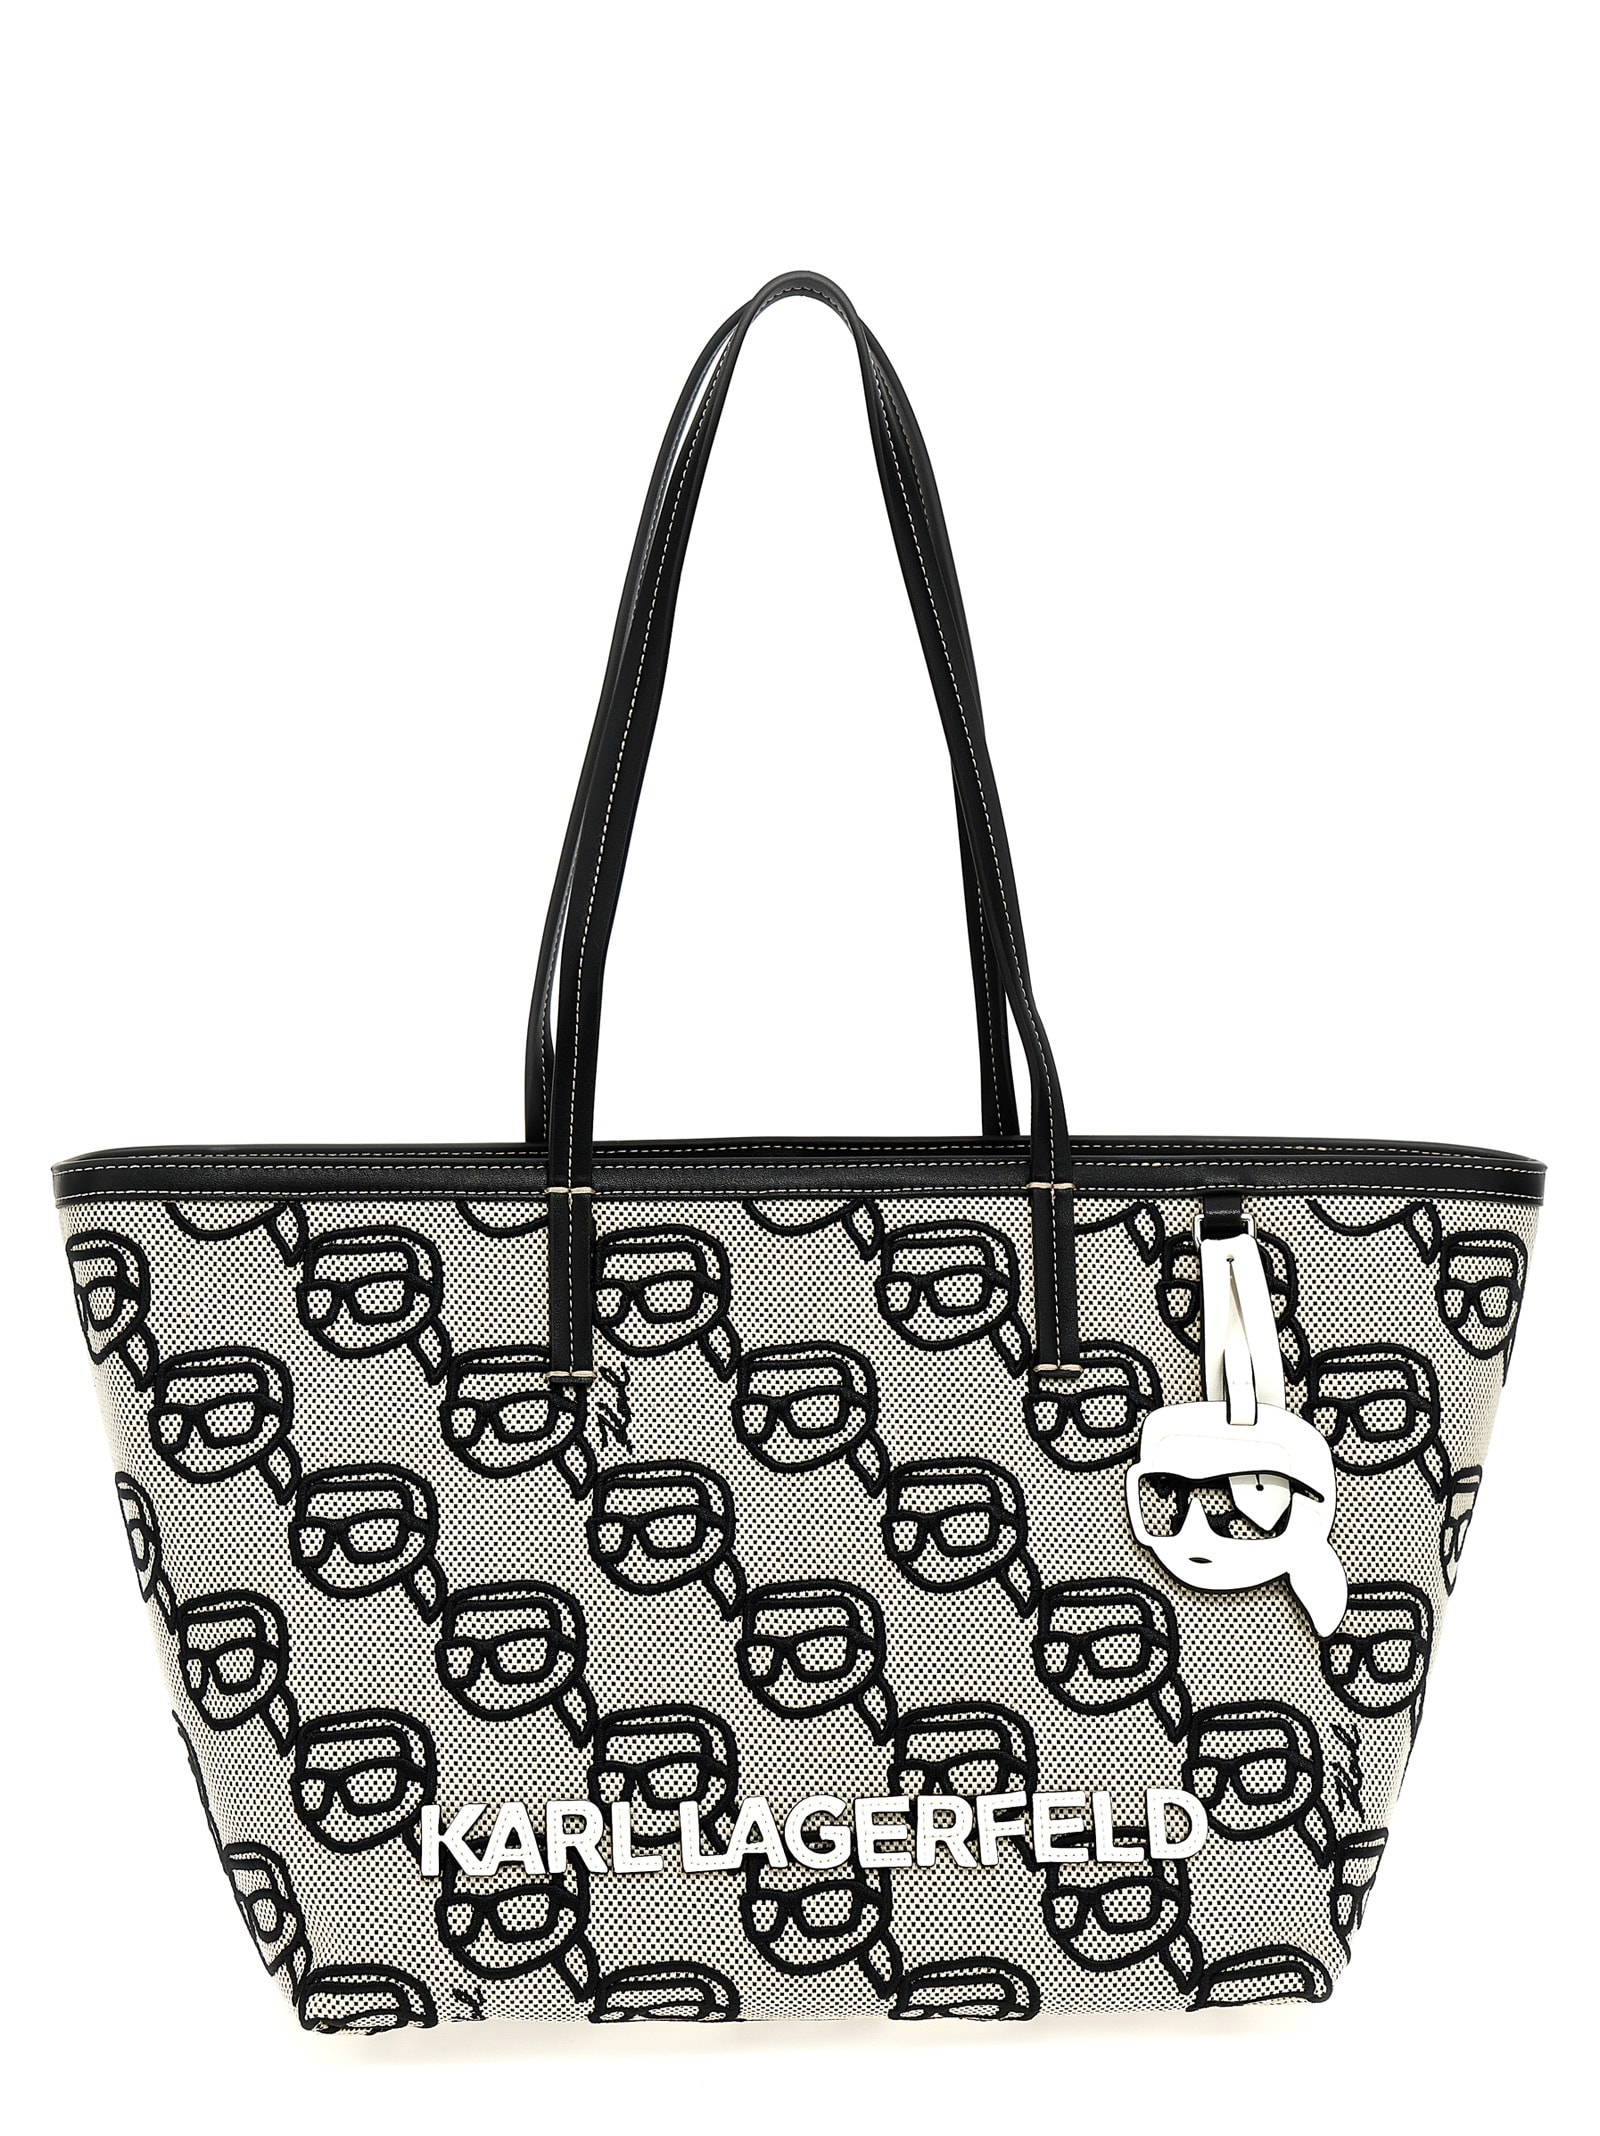 Karl Lagerfeld ikonik 2.0 Shopping Bag